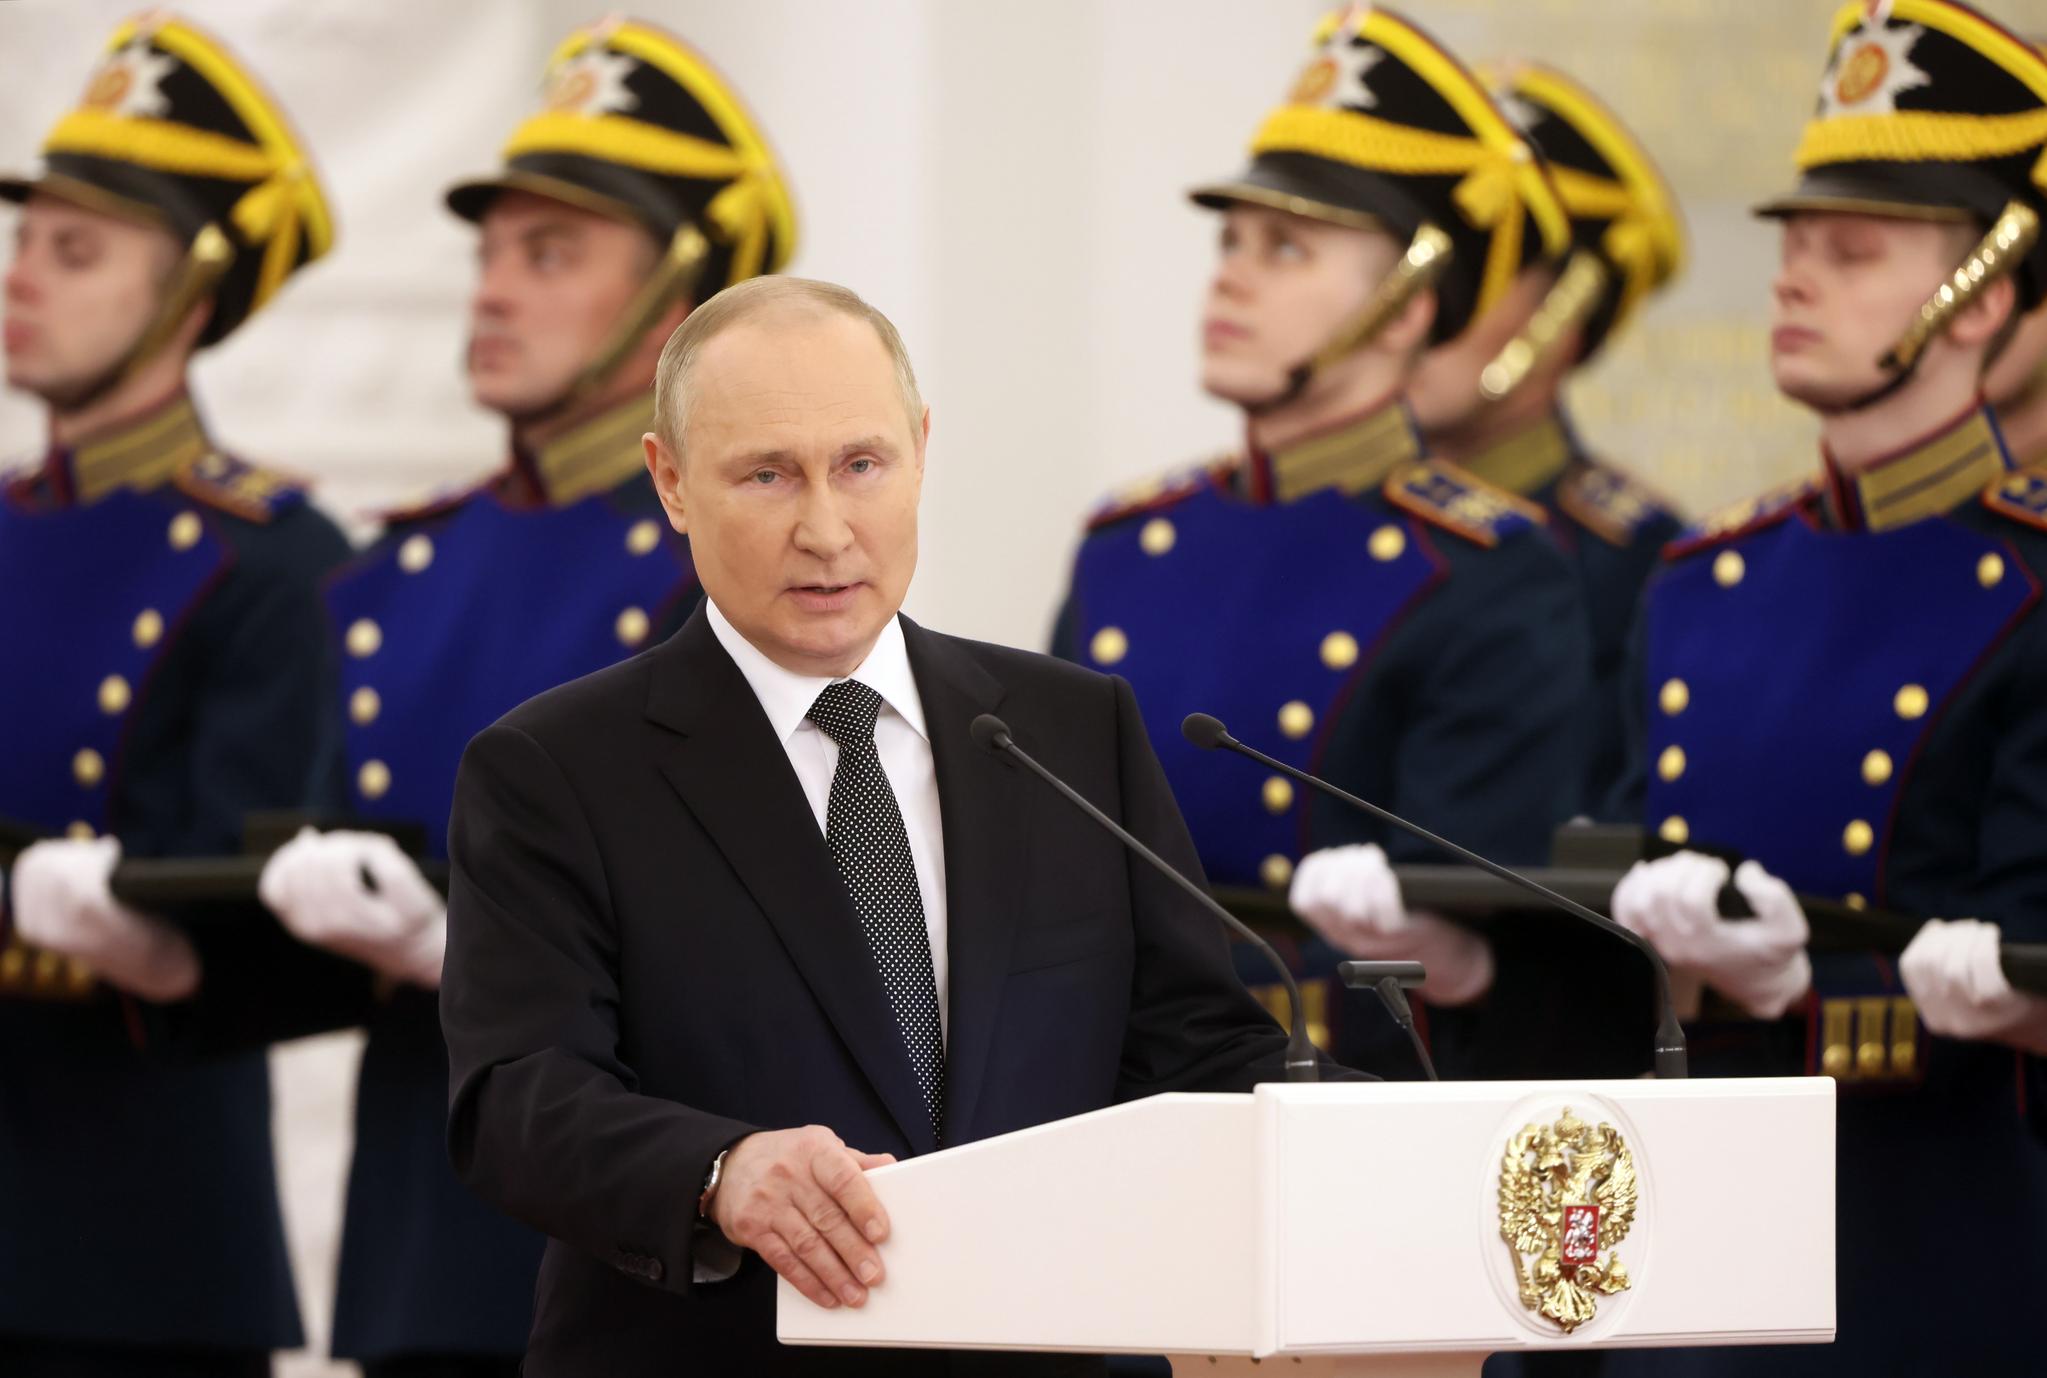 Näin Venäjä liukuu kohti diktatuuria | Tutkija varoittaa | Apu